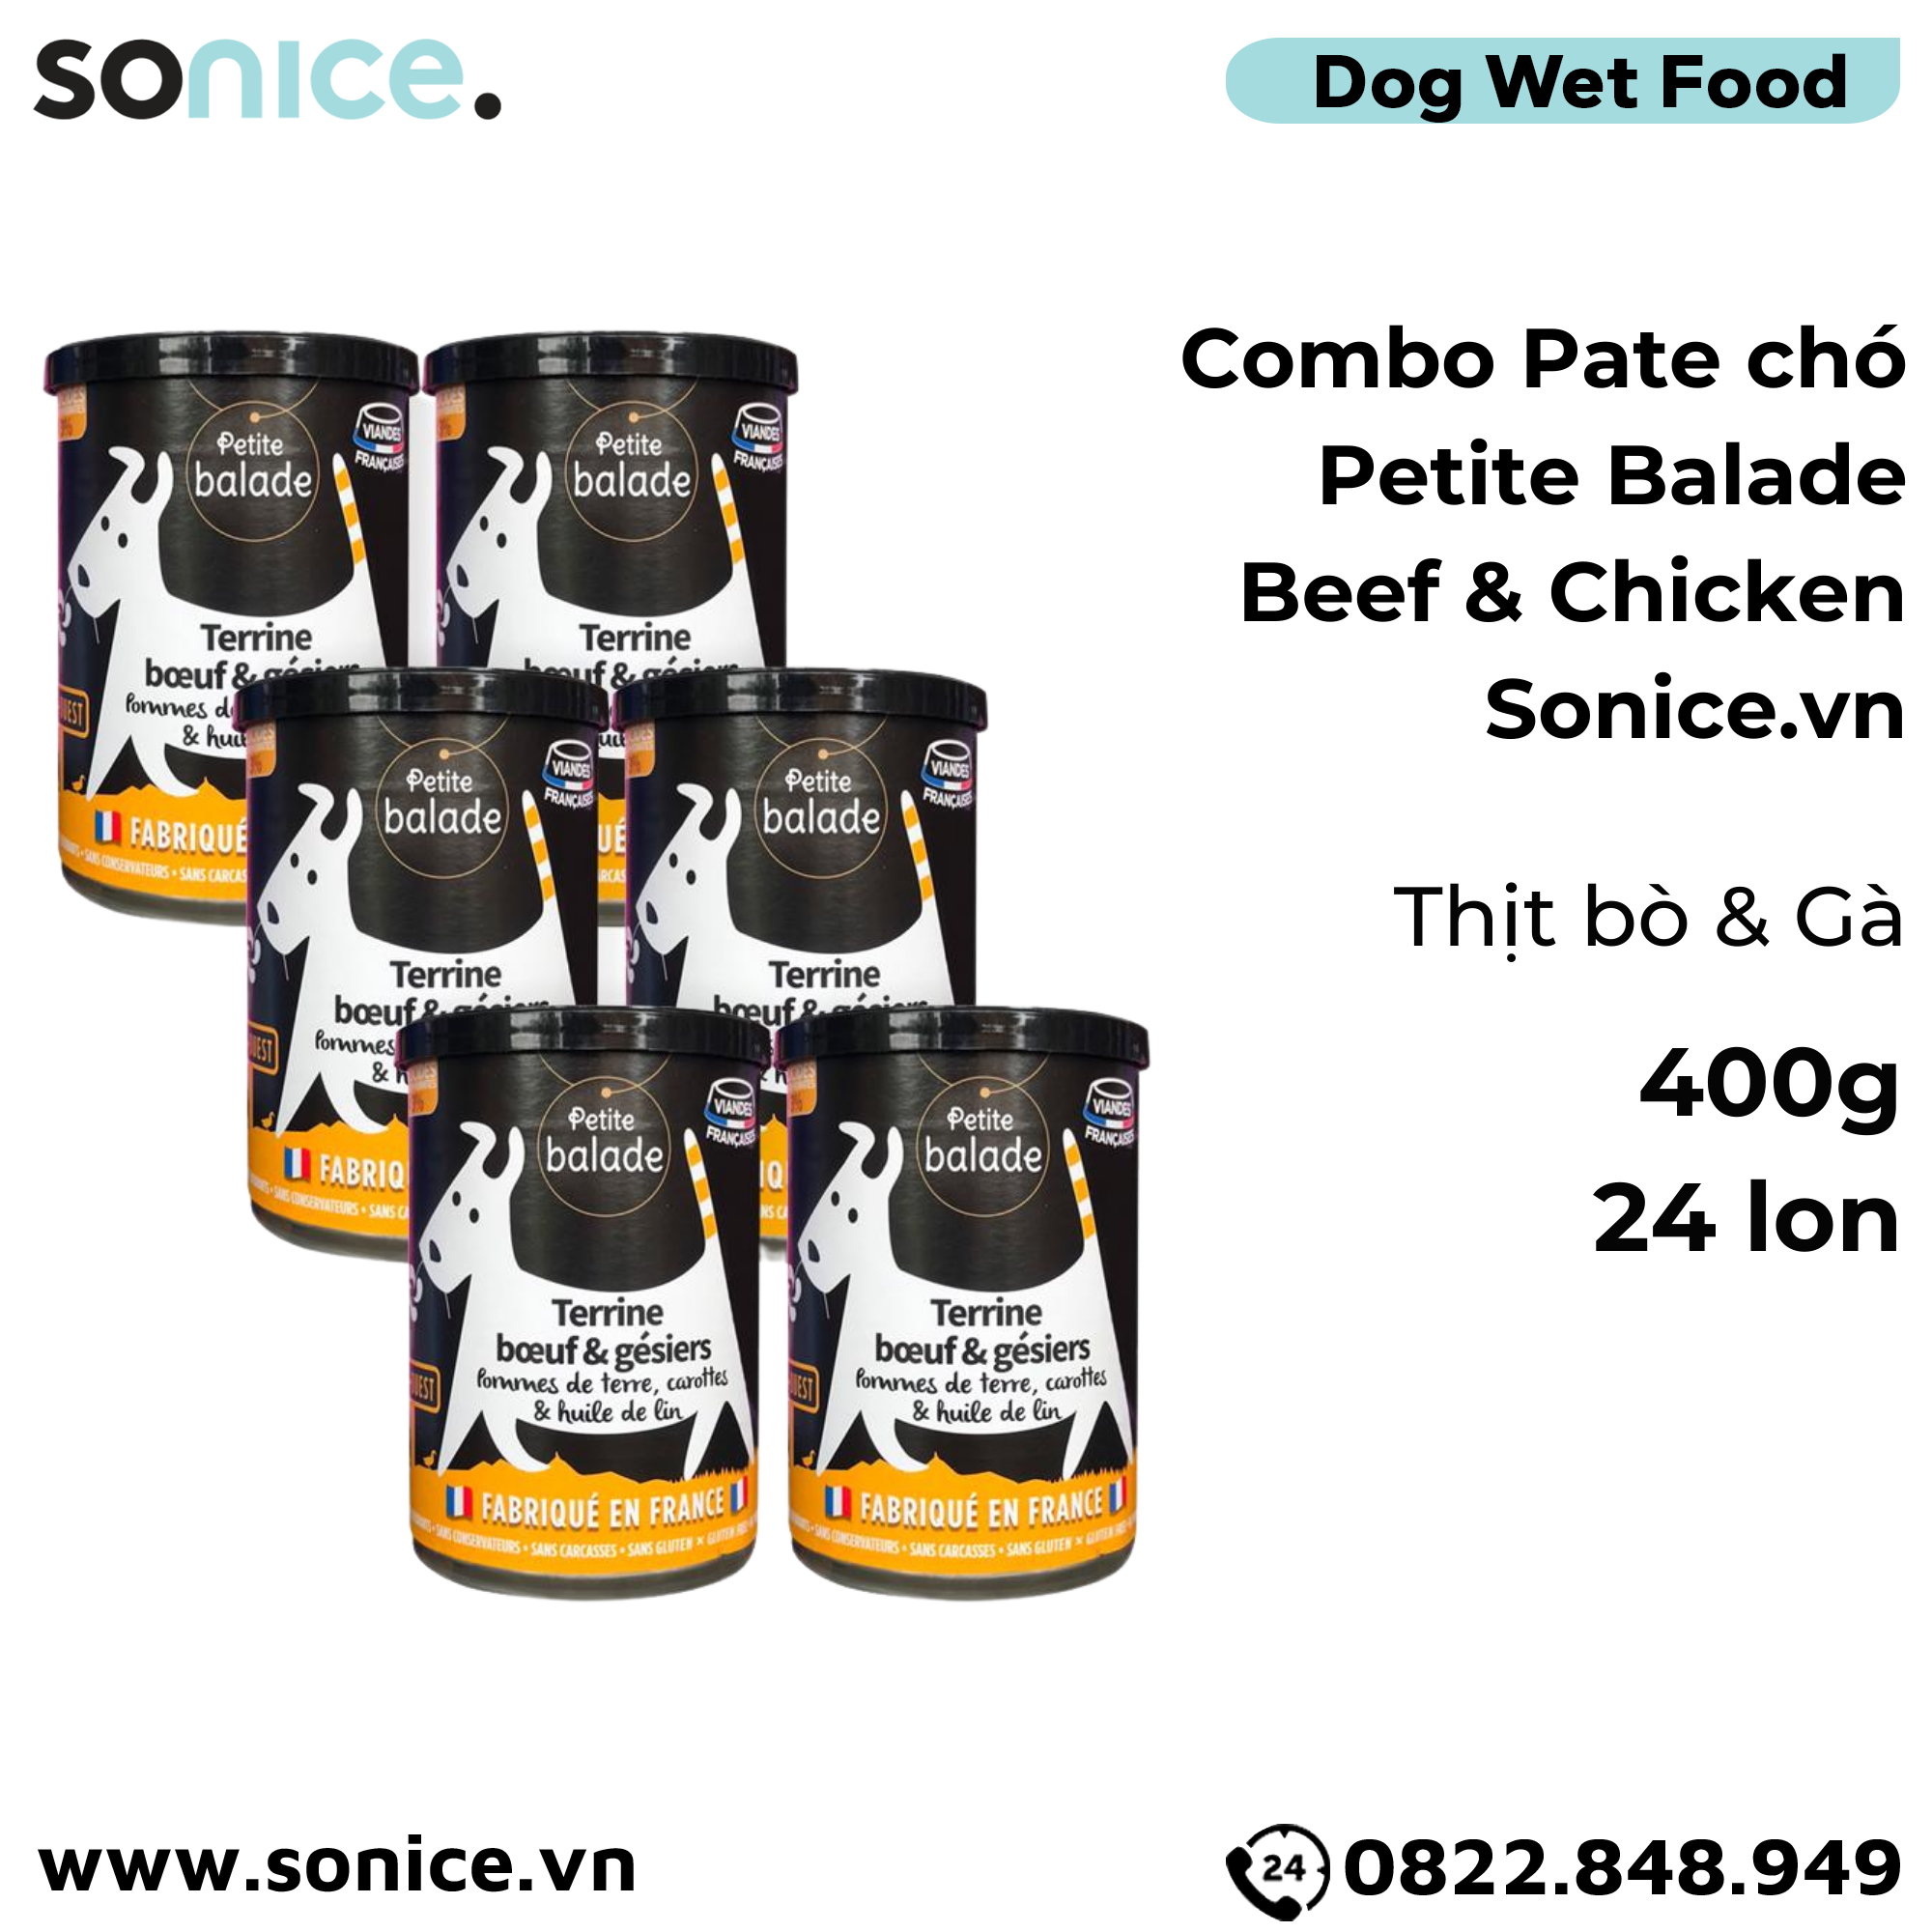  Combo Pate chó Petite Balade Beef & Chicken 400g - 24 lon - Thịt bò và gà SONICE. 